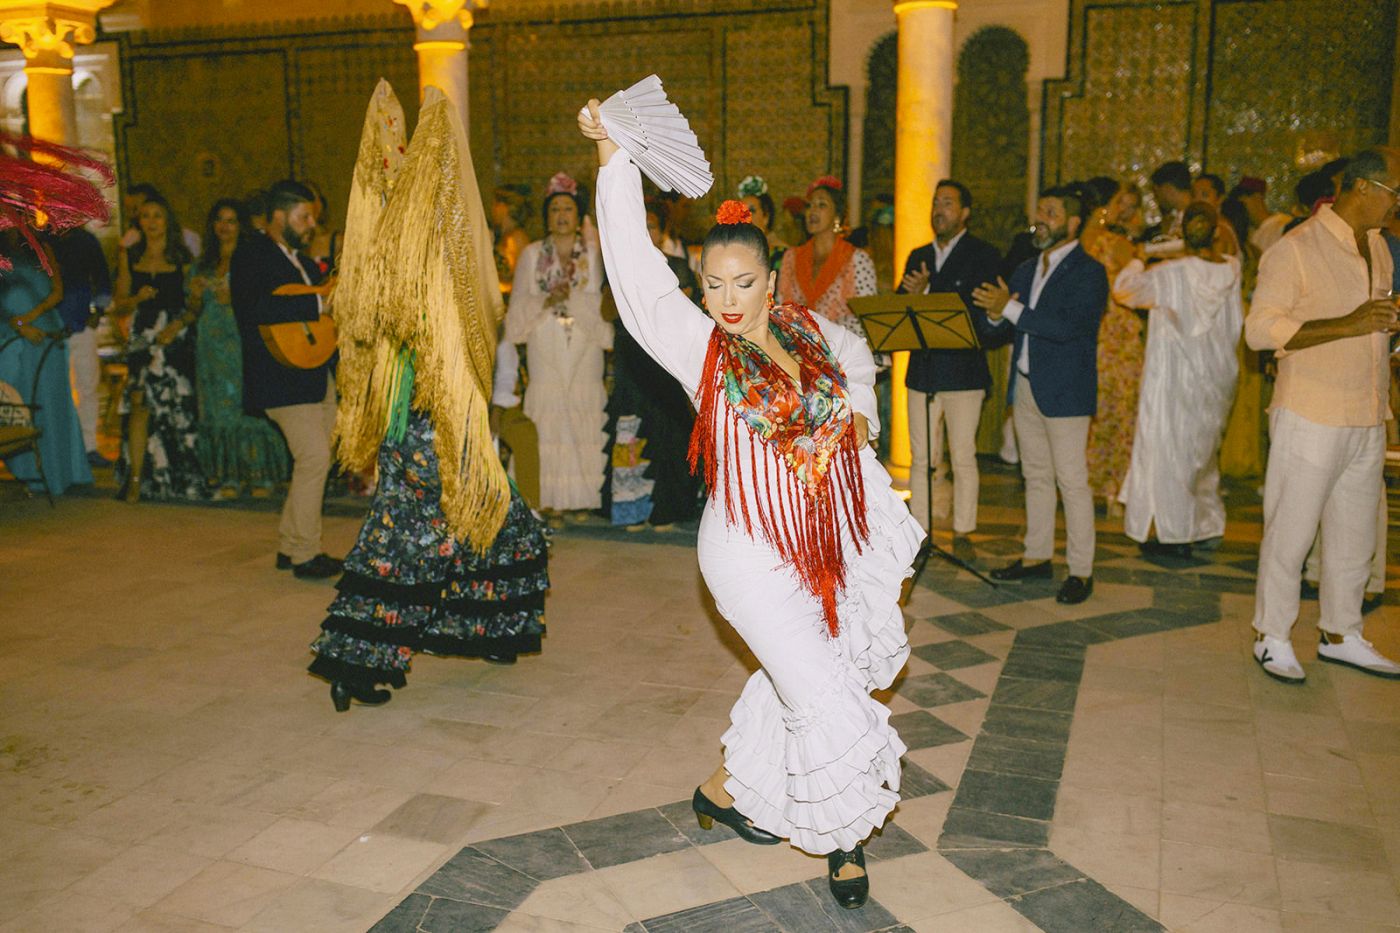 Ladies dancing flamenco at Andalusian-Moorish party in Seville Spain